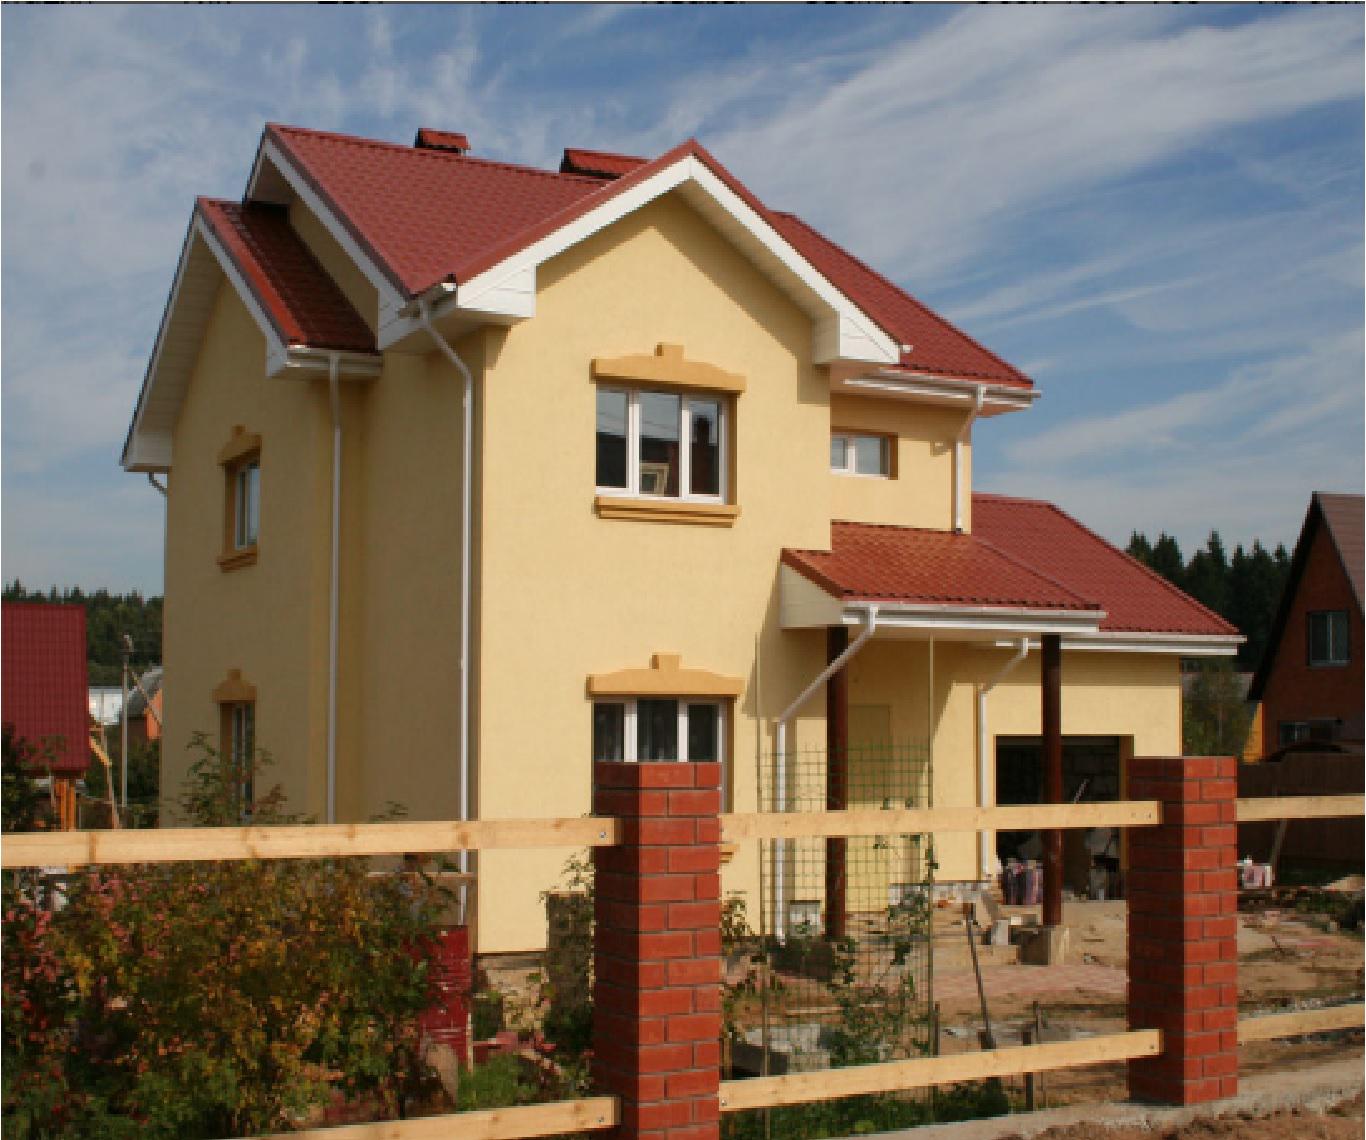 Оштукатуренный дом с красной крышей